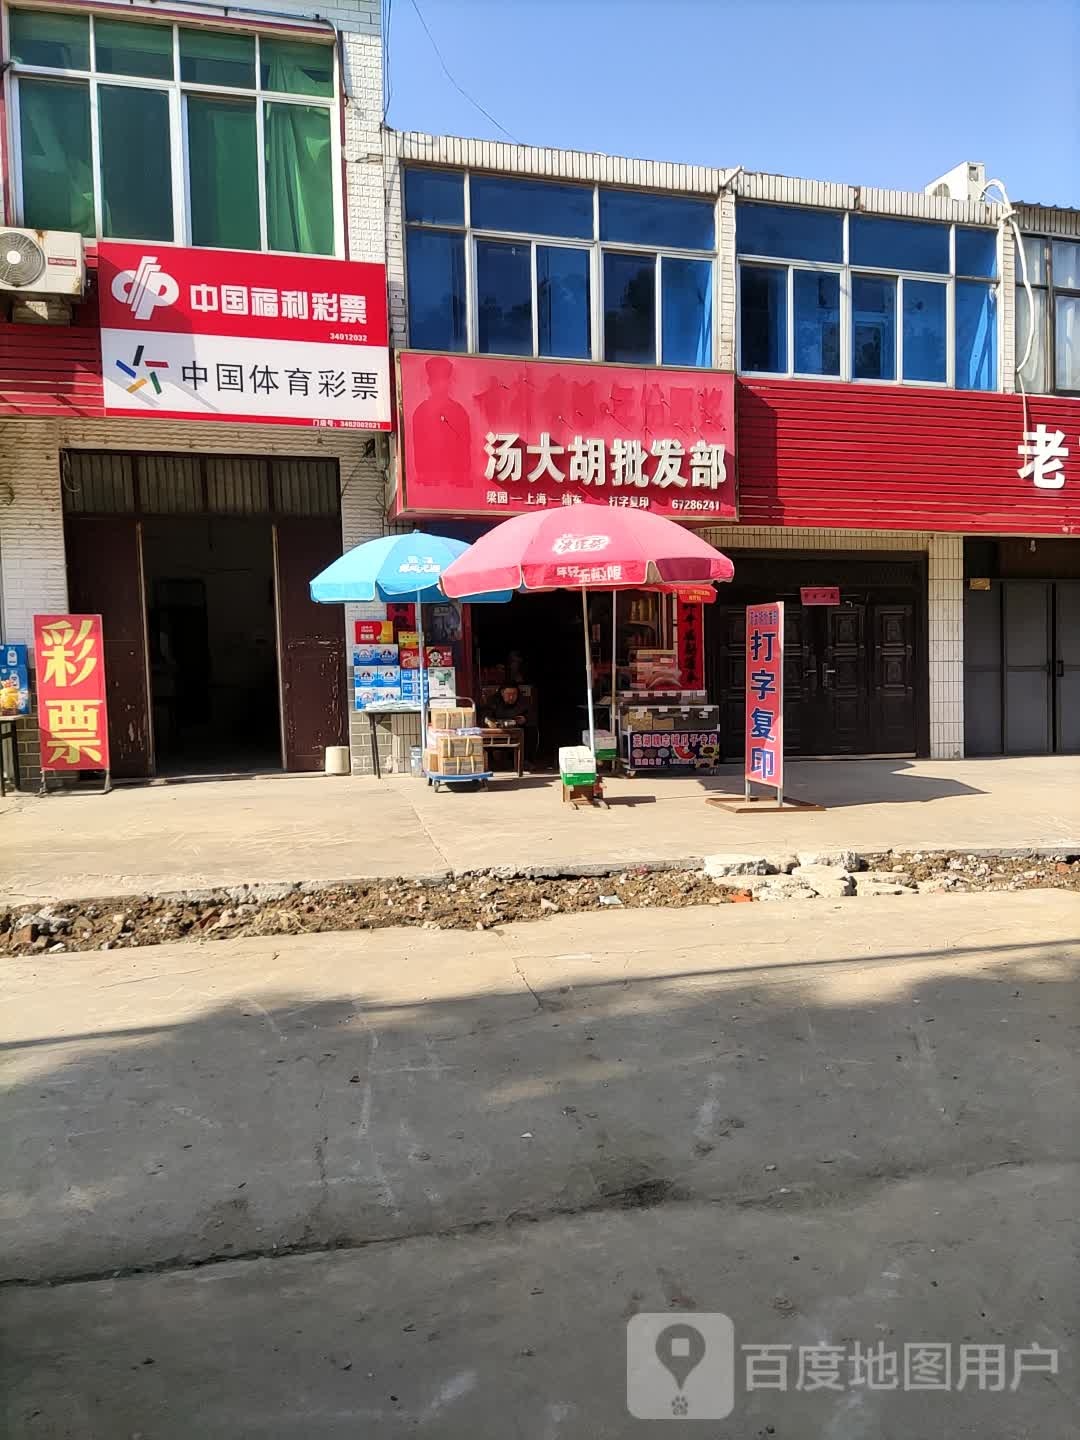 中国福利彩票(太平路店)